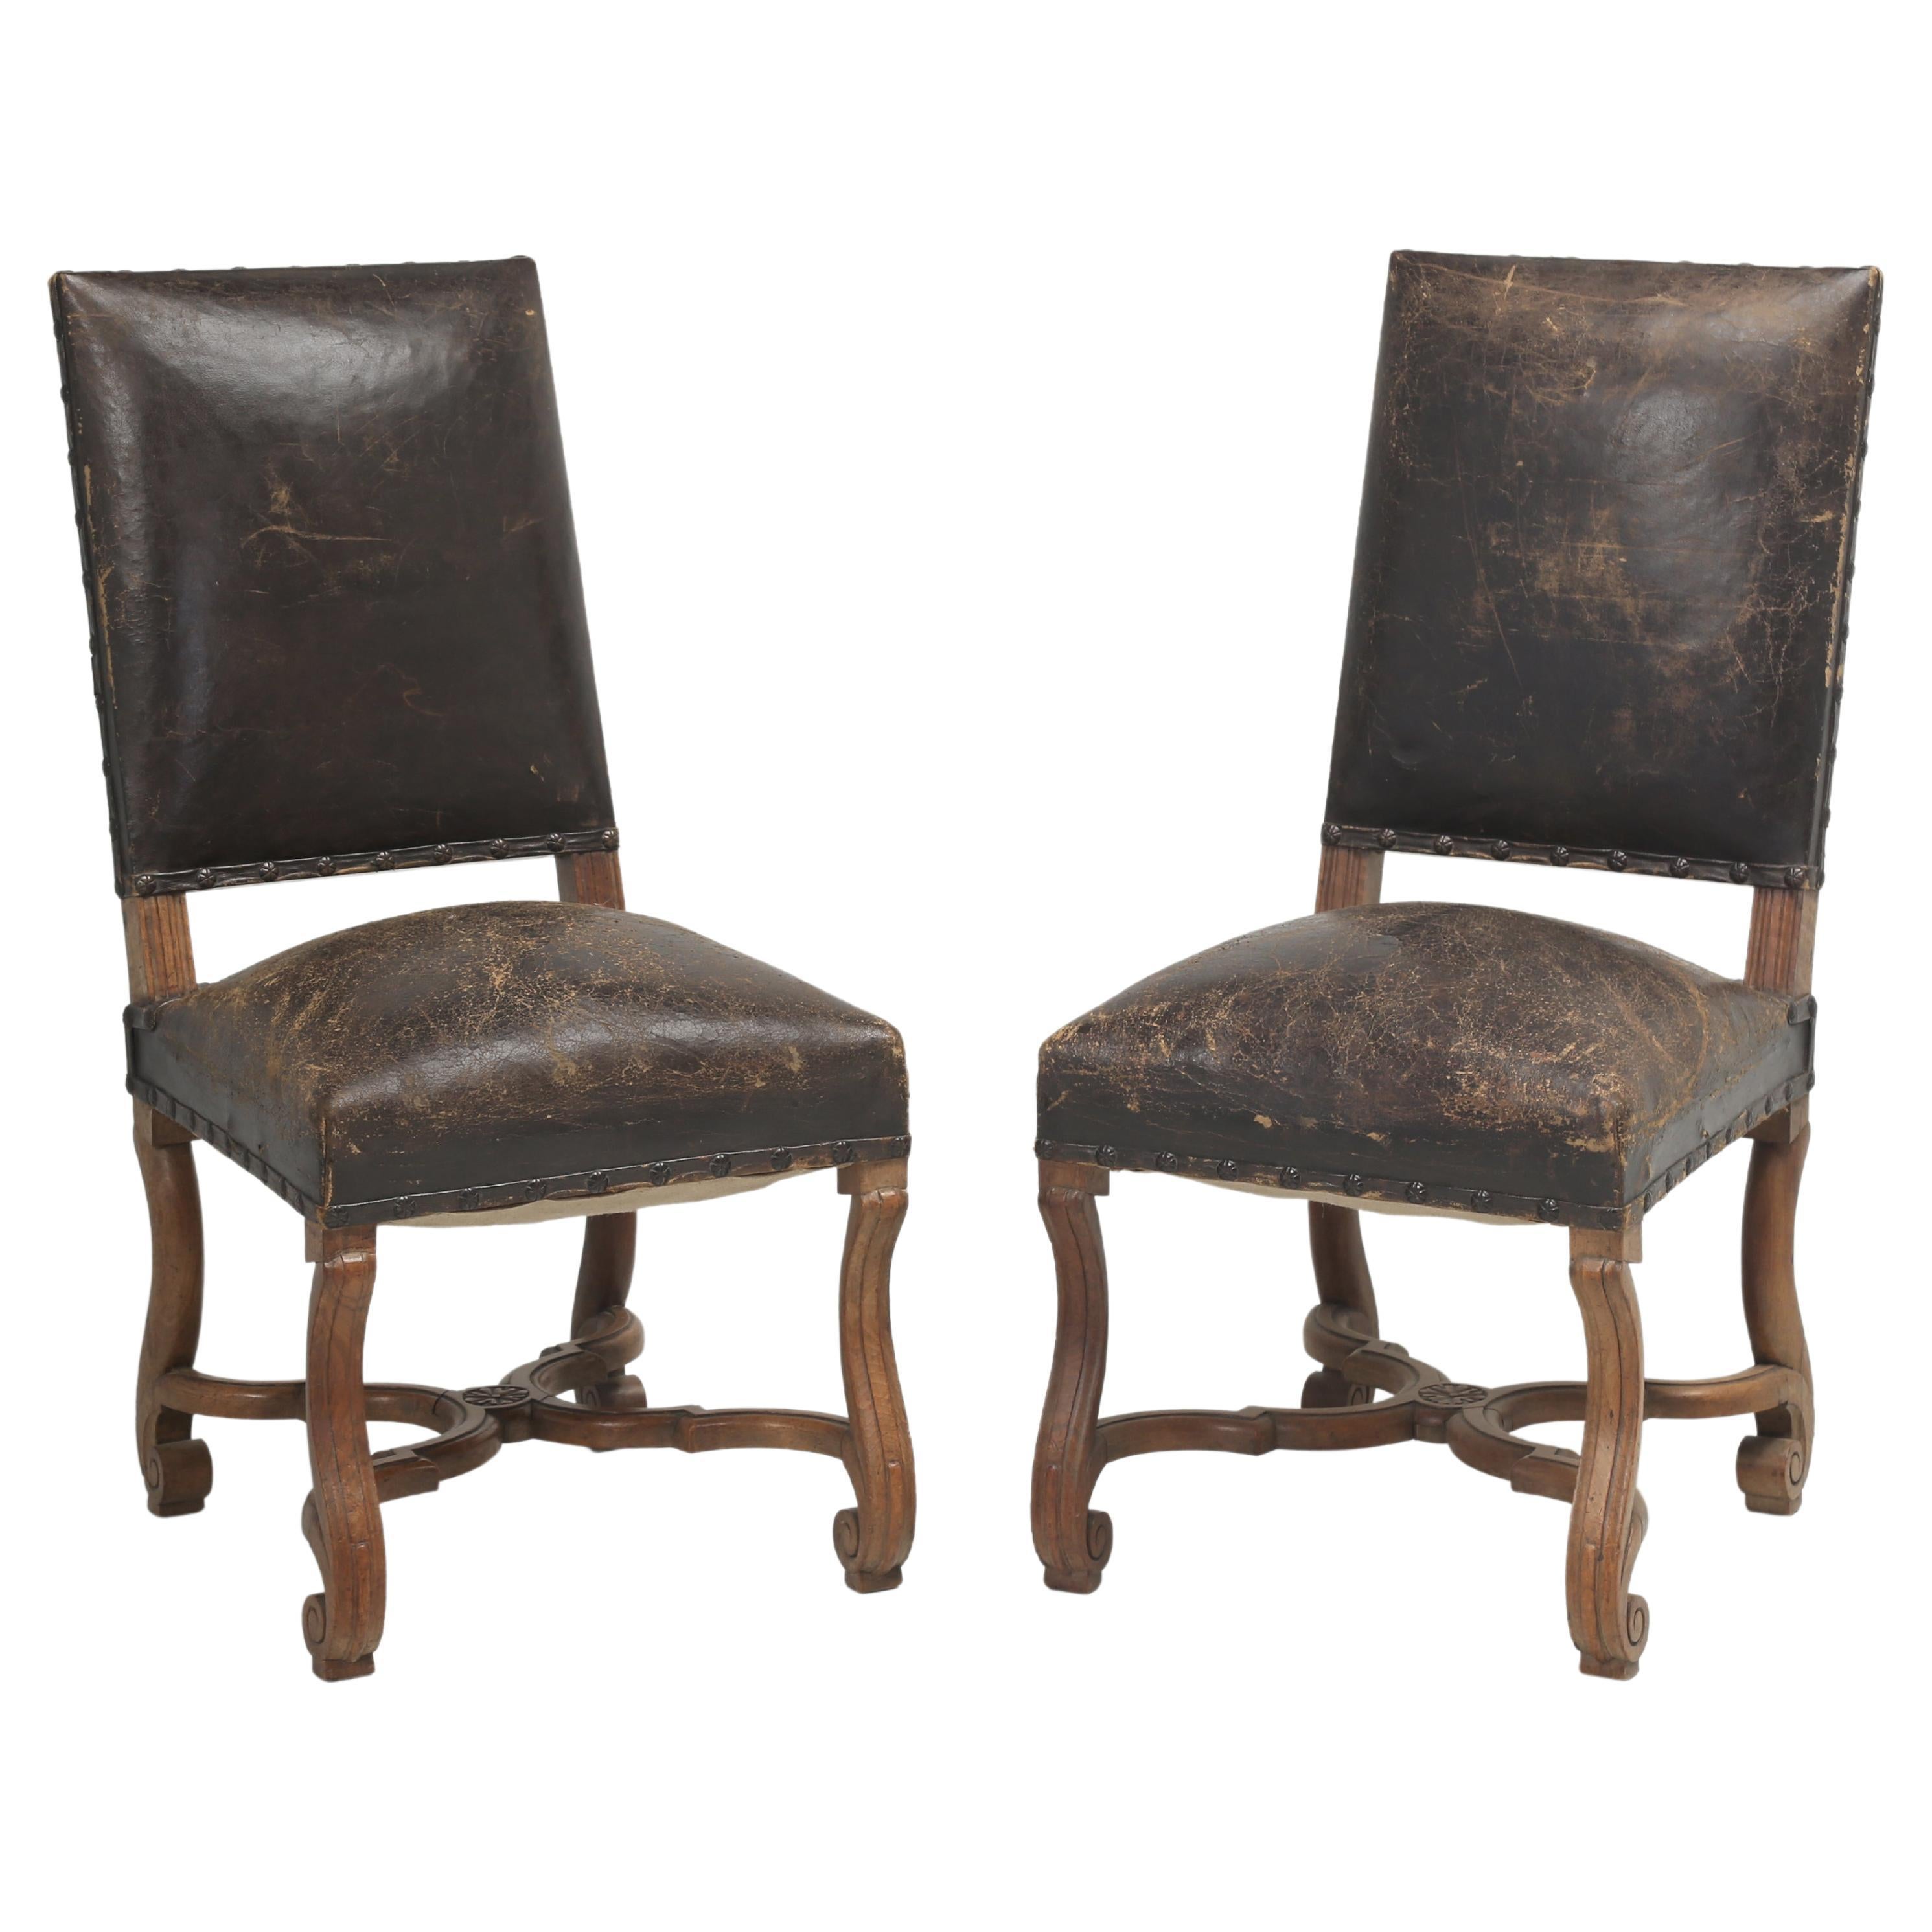 Paar antike Beistellstühle aus altem Leder, wahrscheinlich italienischer Stil, frühe 1900er Jahre, unrestauriert im Angebot